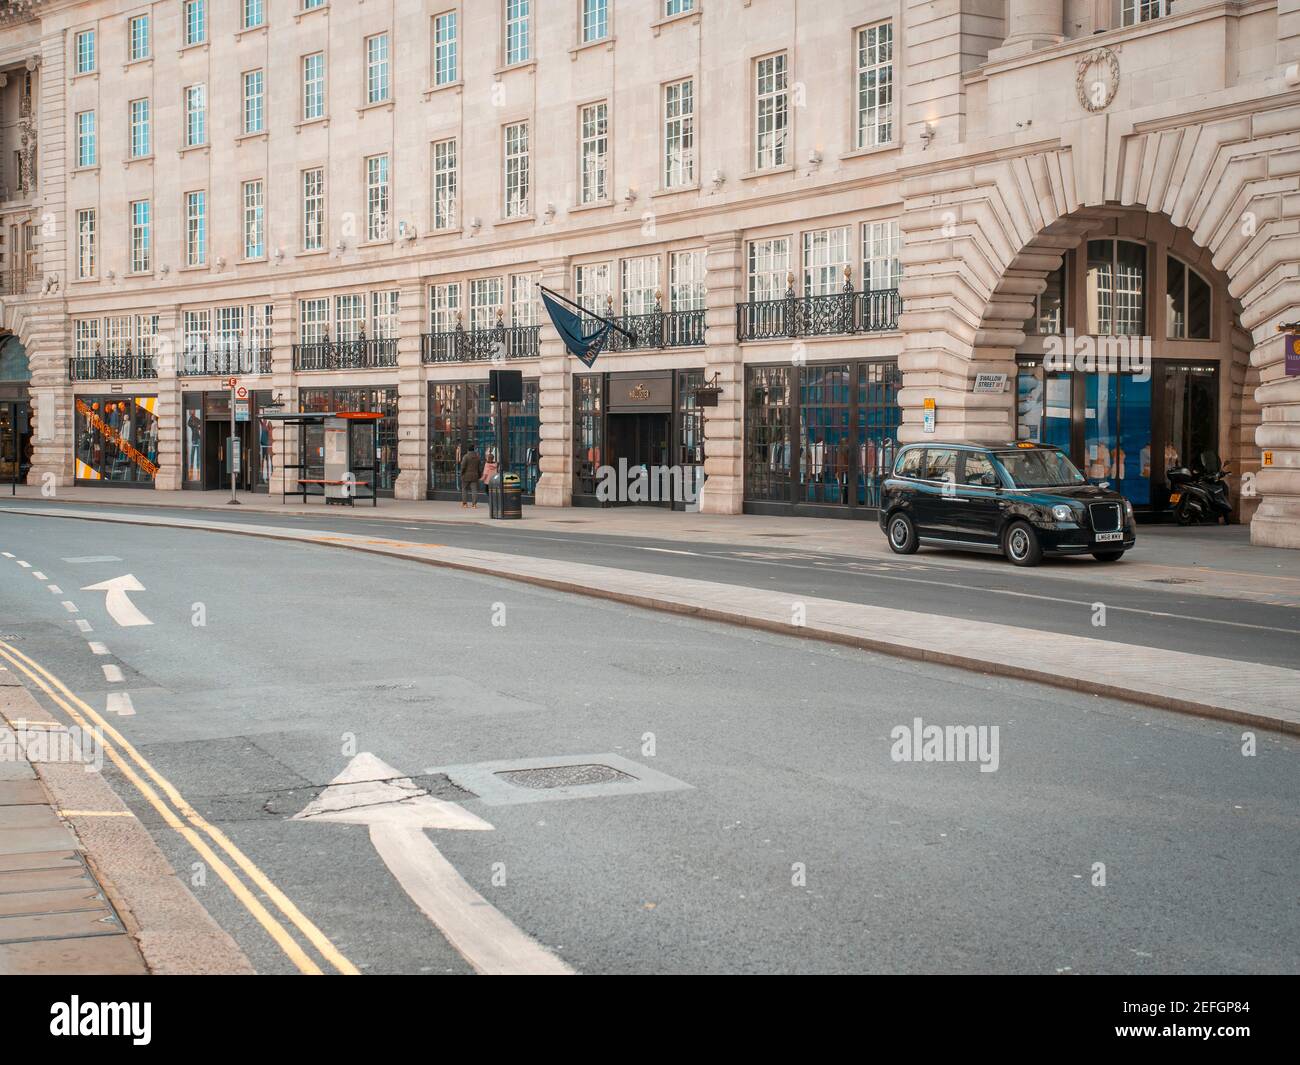 London, England - 17. März 2020: Regent Street ist leer, weil Coronavirus-Sperre Menschen aus öffentlichen Räumen verbietet Stockfoto